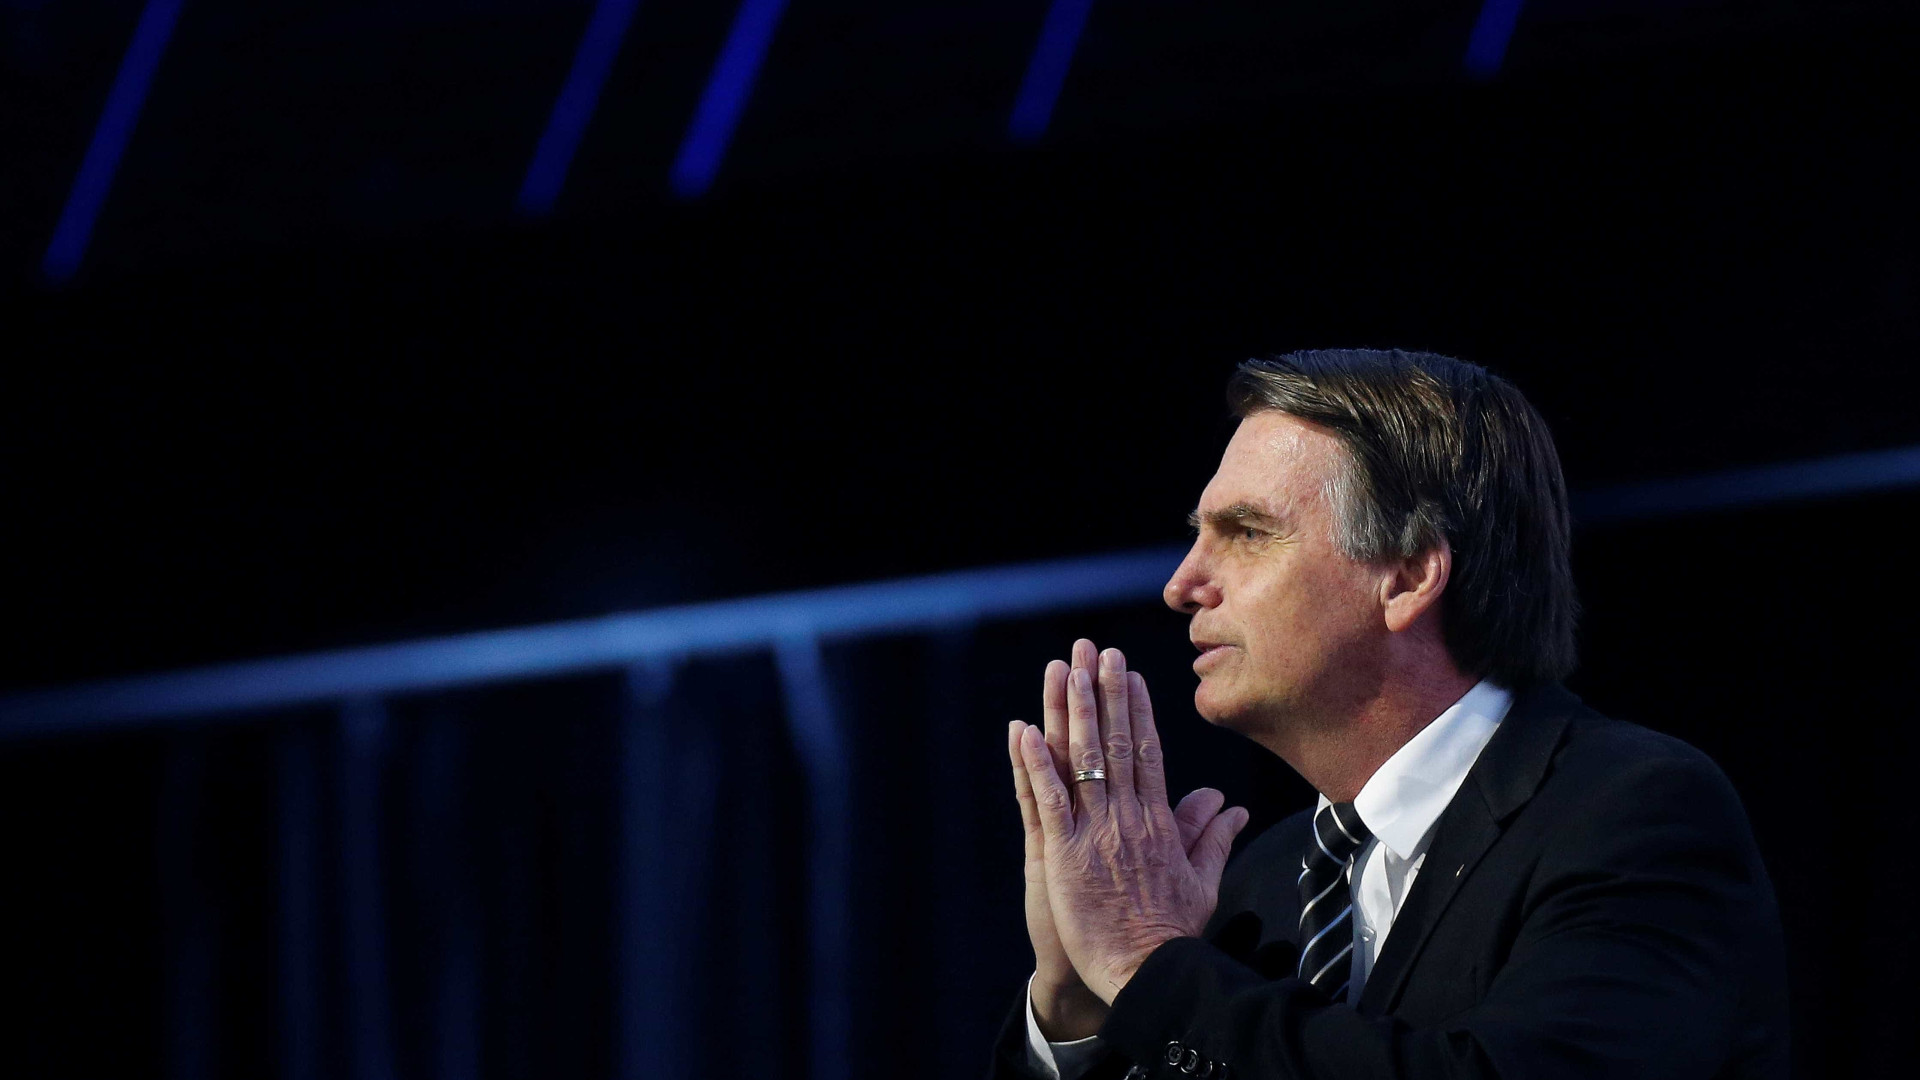 Na web, Bolsonaro tenta minimizar isolamento e rejeição de partidos